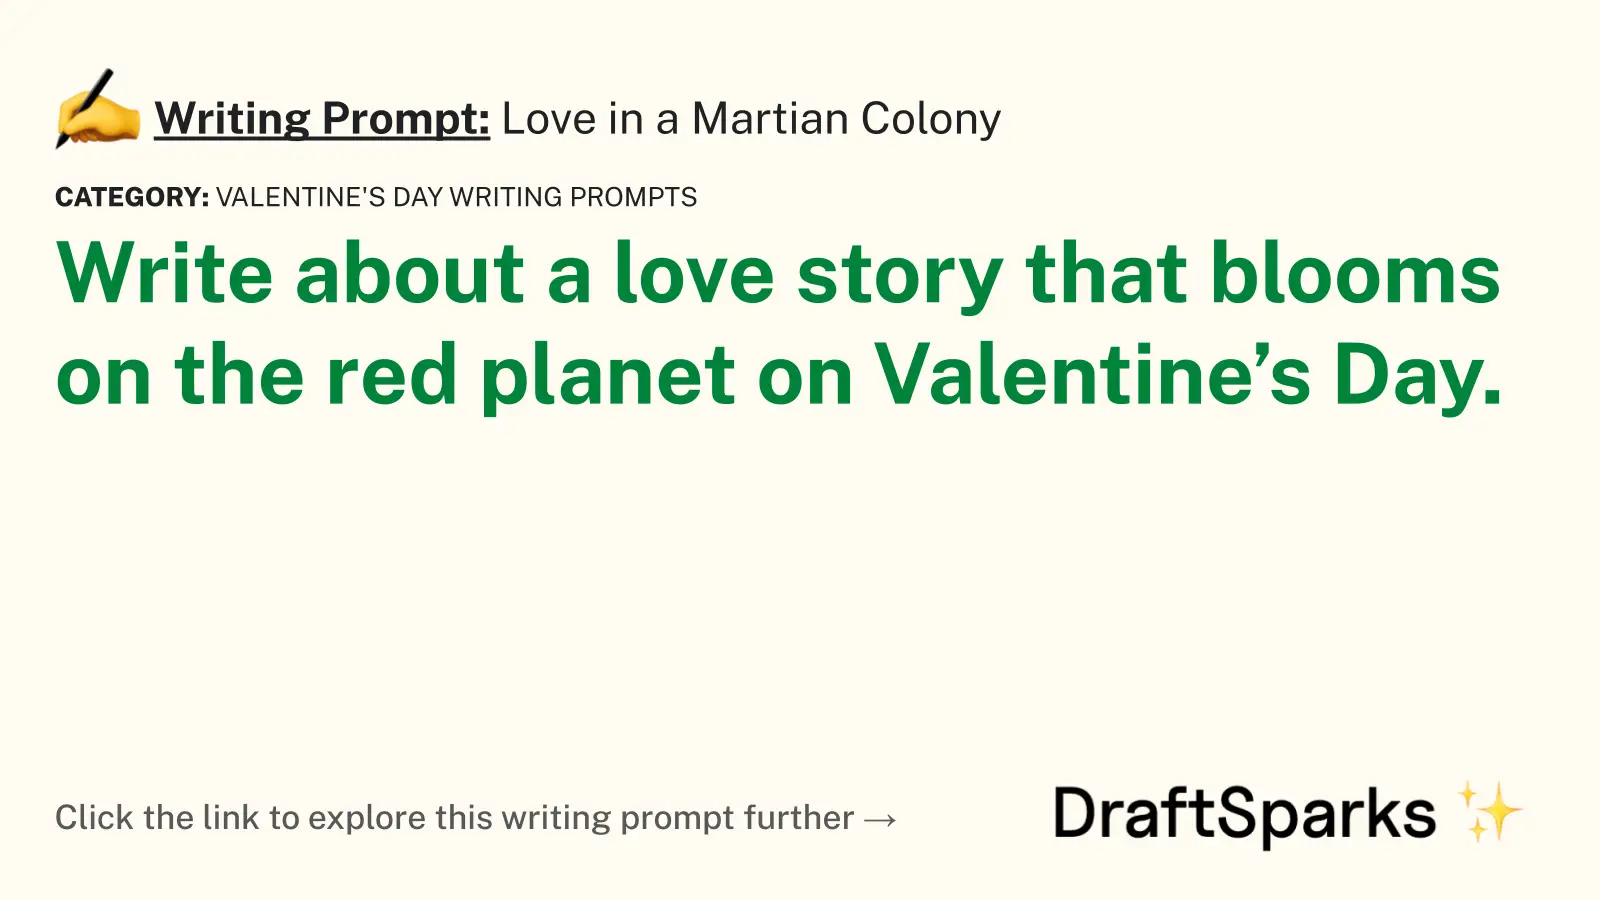 Love in a Martian Colony